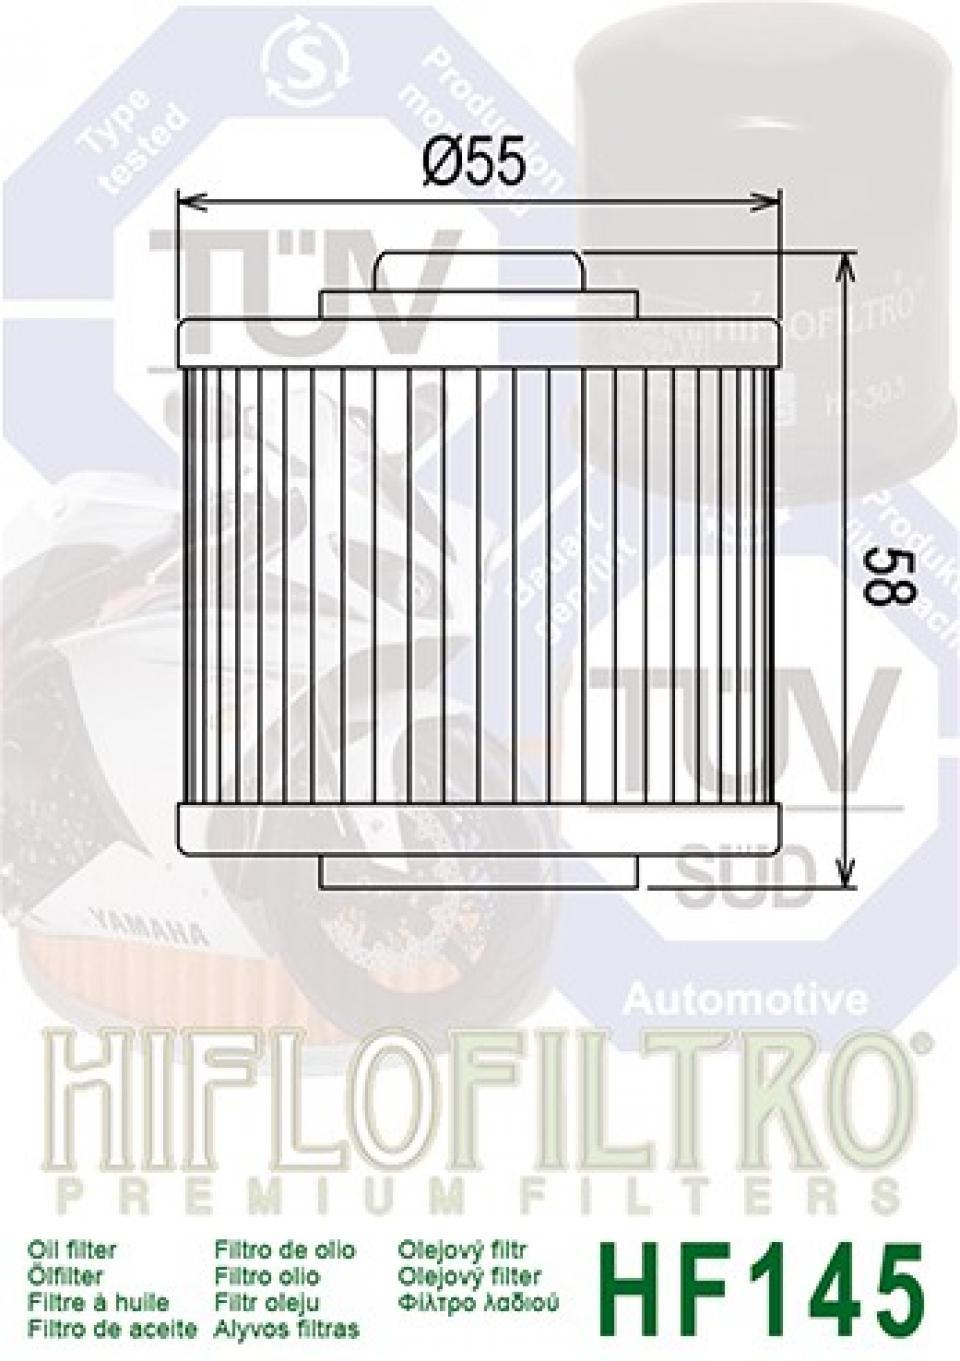 Filtre à huile Hiflofiltro pour Moto MZ 660 Mastiff 1998 à 2005 Neuf